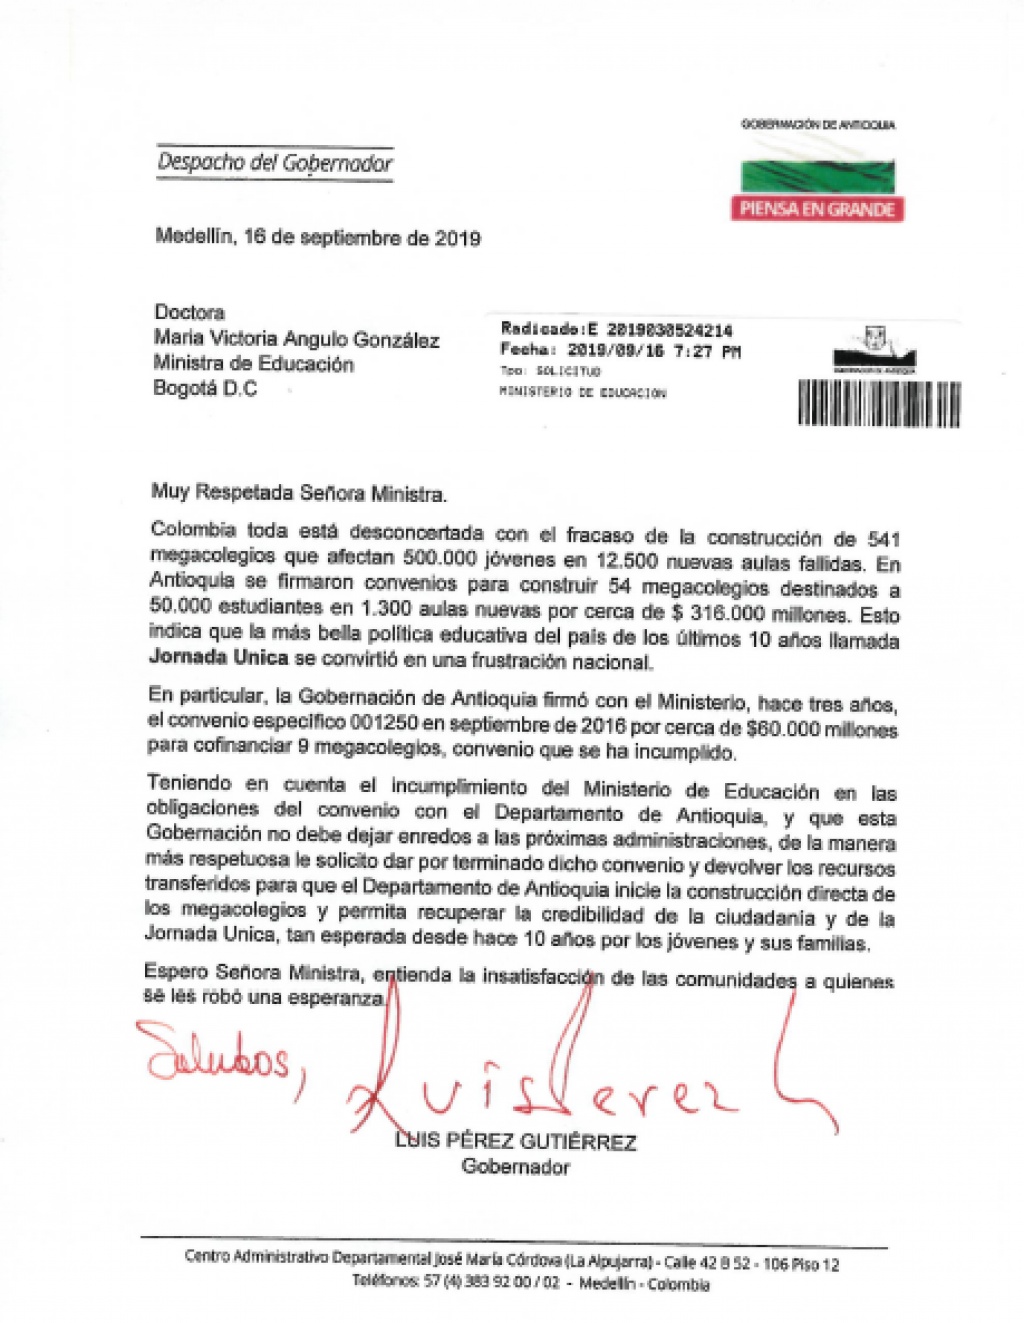 Gobernador de Antioquia Luis Pérez Gutiérrez, solcitó a la Ministra de Educación, dar por terminado convenio y devolver los dineros de los megacolegios